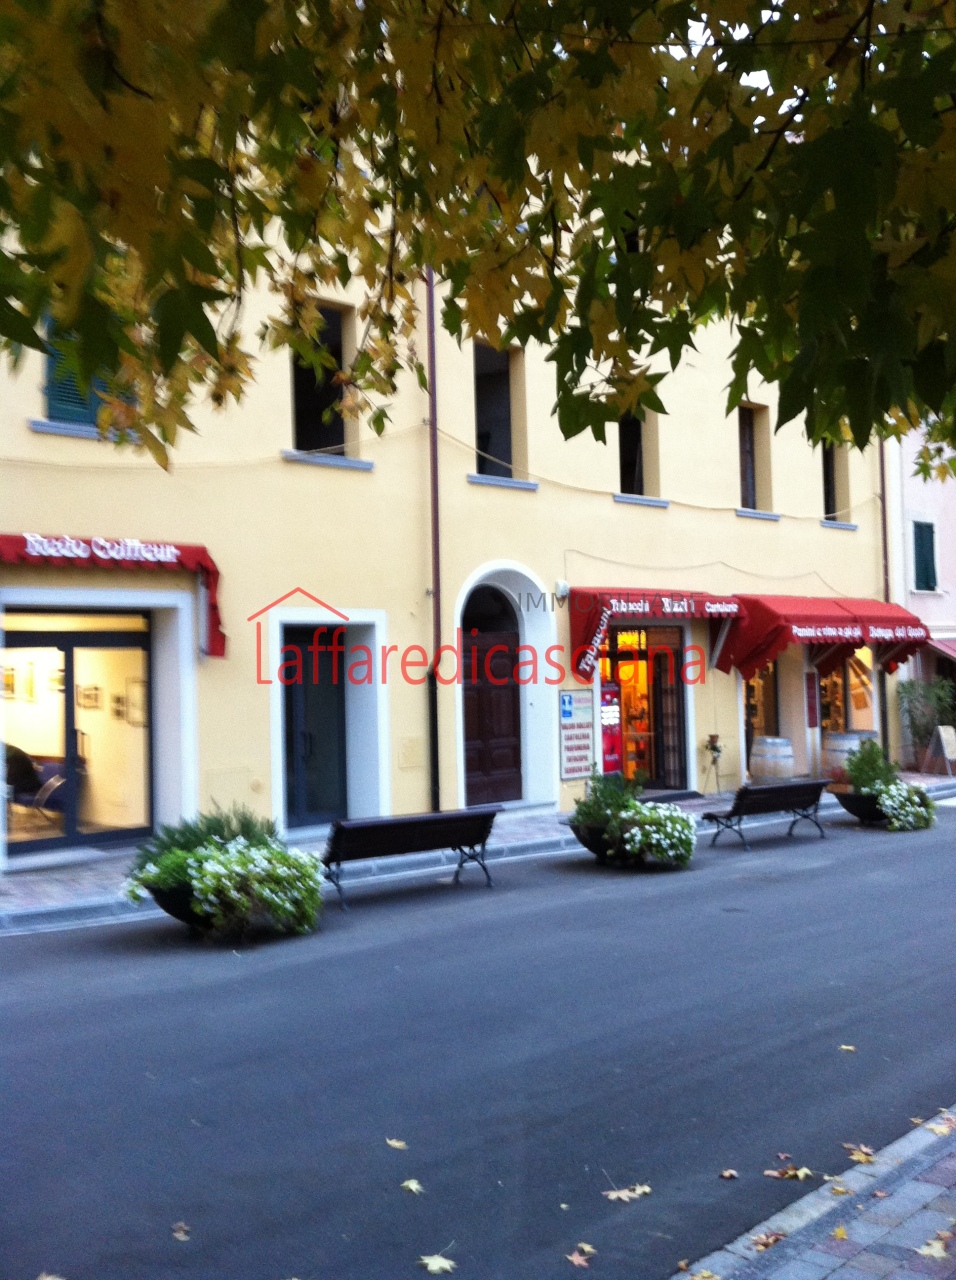 Appartamento in vendita a Casciana Terme Lari, 4 locali, prezzo € 130.000 | PortaleAgenzieImmobiliari.it